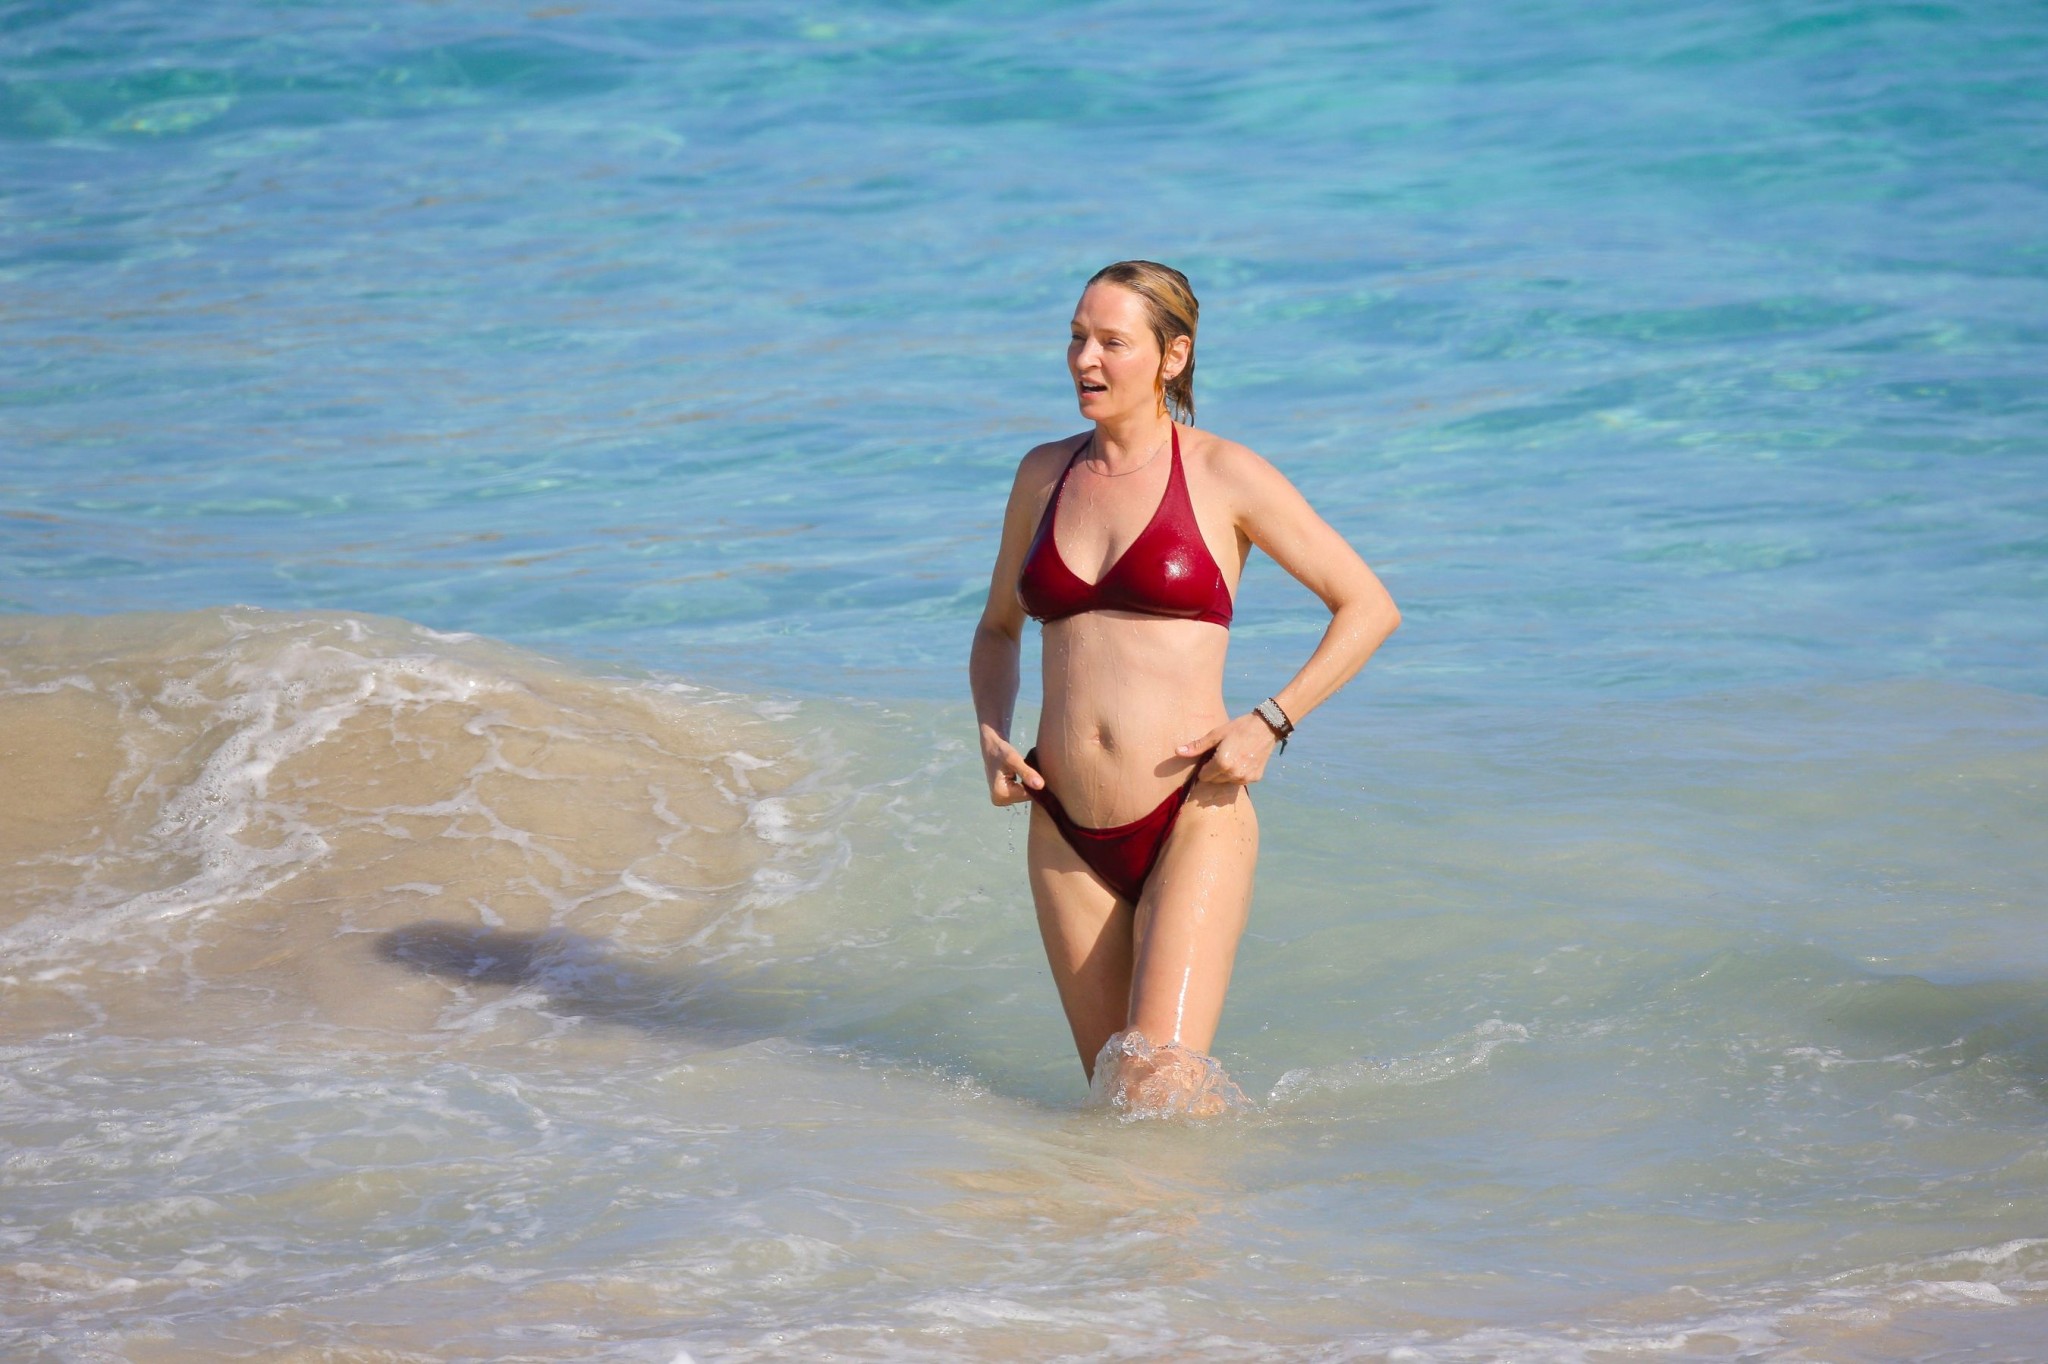 Uma thurman mostrando pokies en un escaso bikini rojo en la playa en stbarts
 #75170009